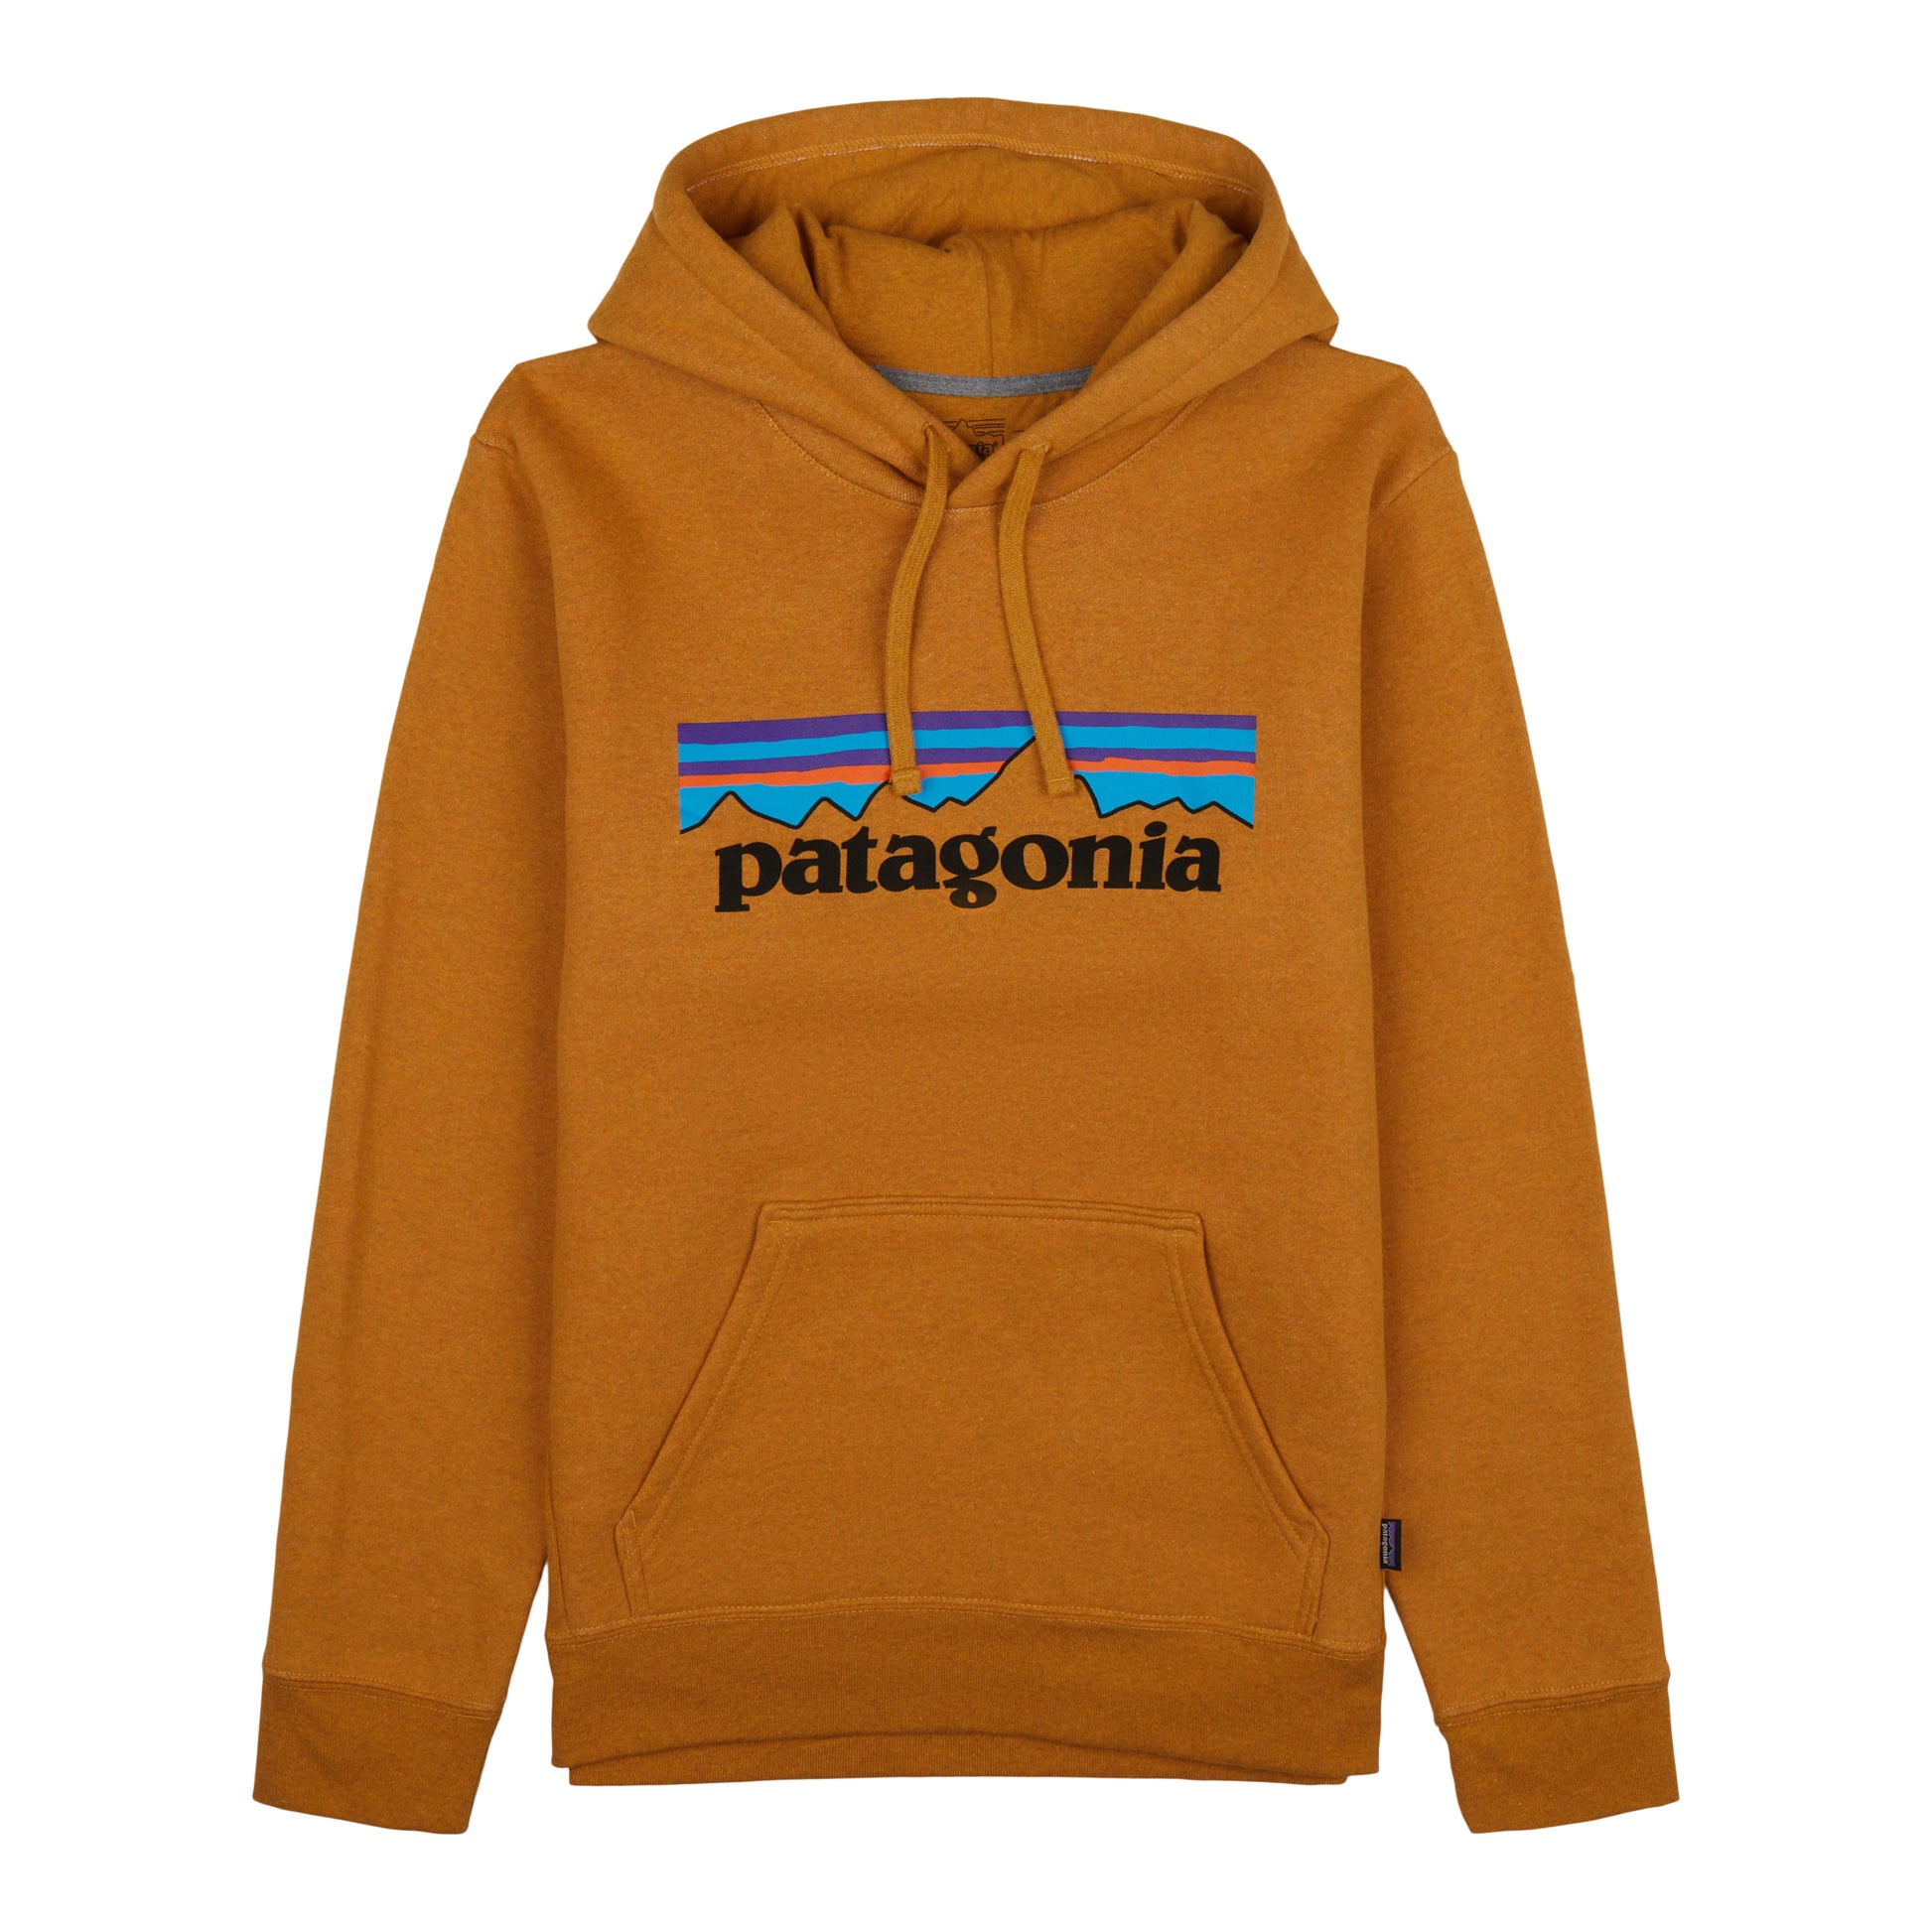 Patagonia Men's P-6 Logo Uprisal Hoody - Black,XL